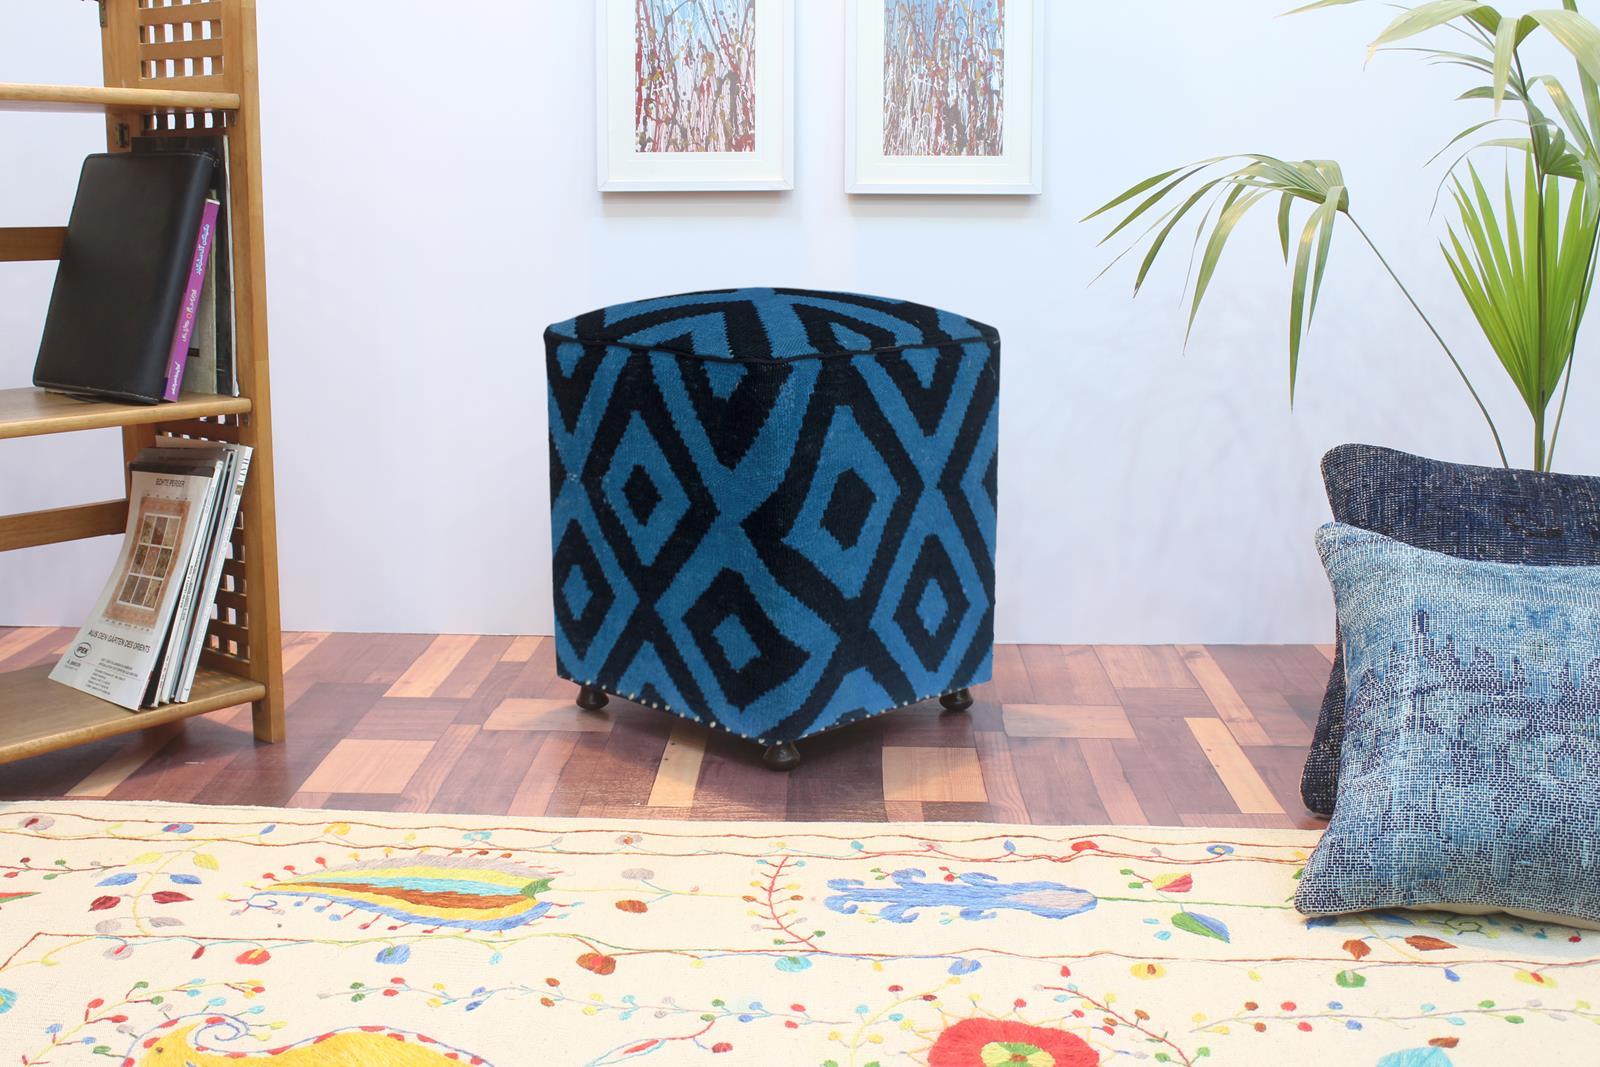 handmade  Ottoman Lt. Blue Black HandmadeRECTANGLE 100% WOOL area rug 